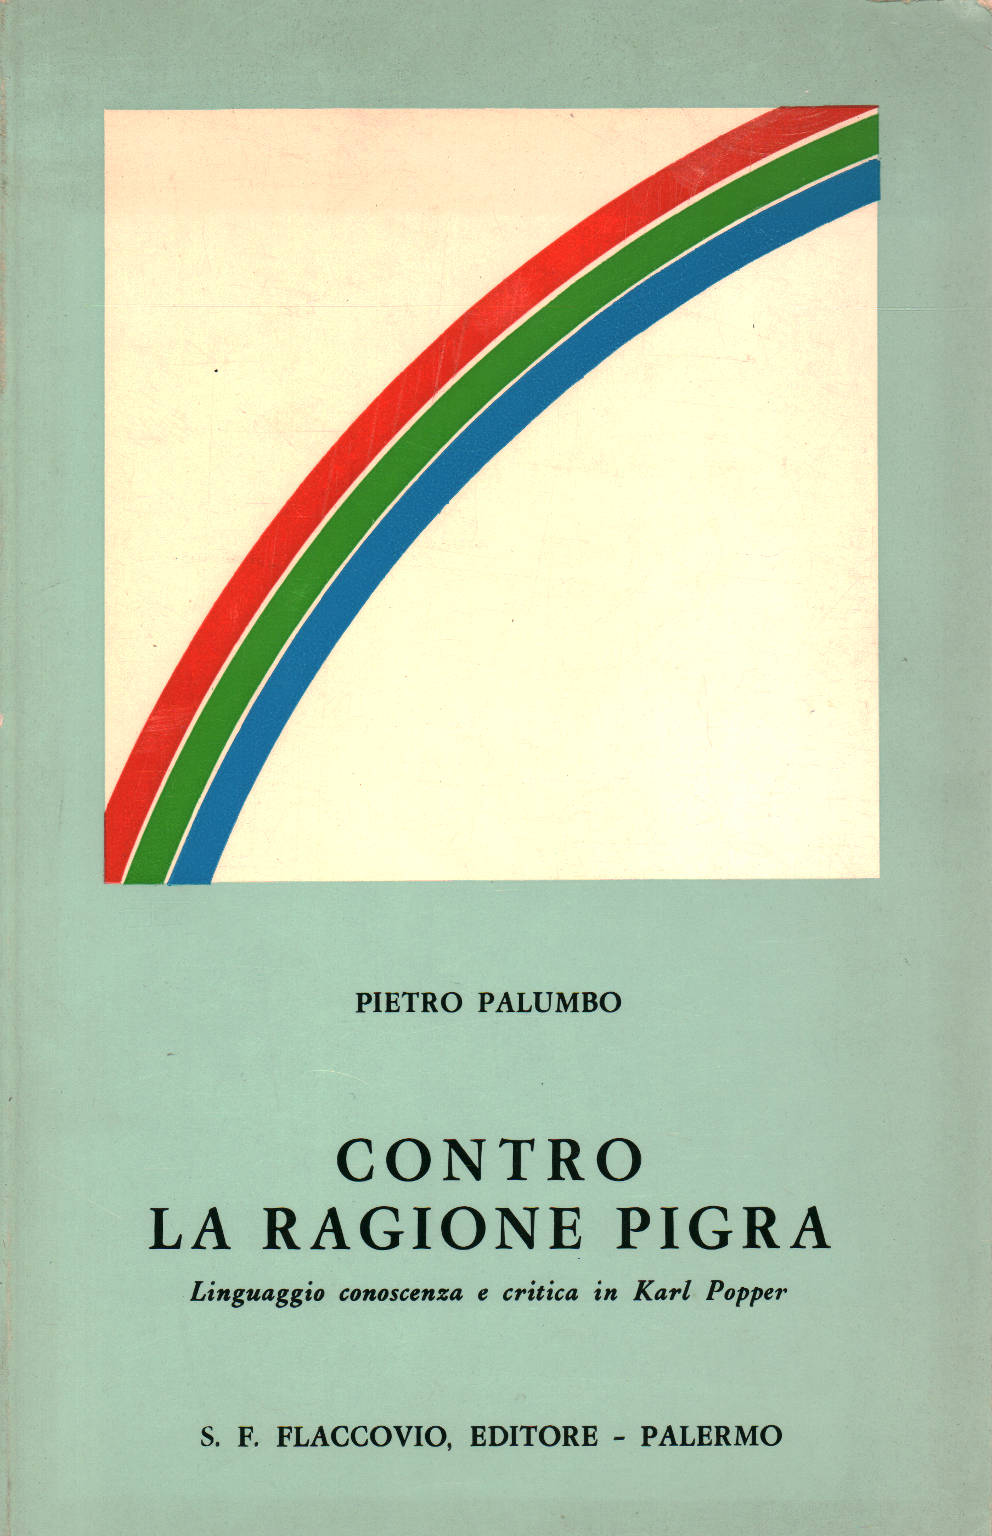 Contro la ragione pigra, Pietro Palumbo